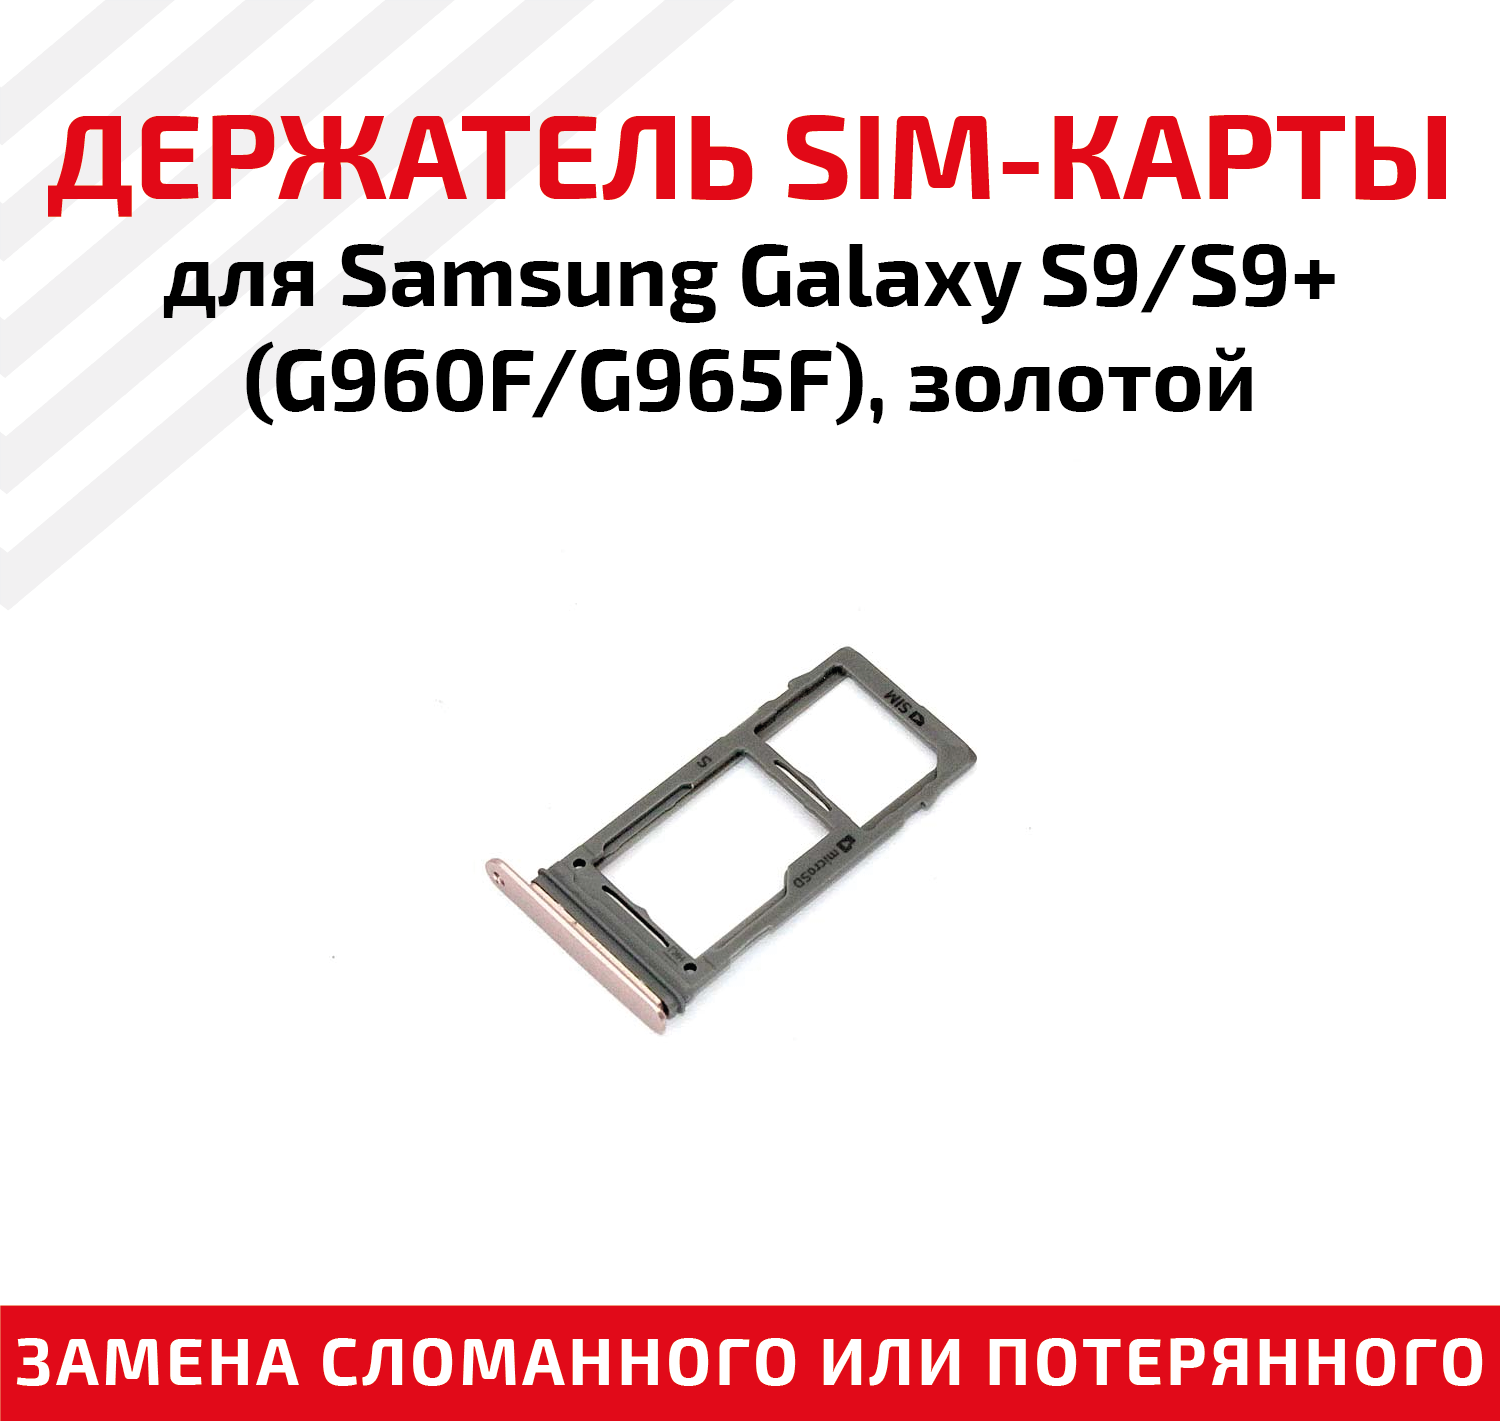 Лоток (держатель, контейнер, слот) SIM-карты для мобильного телефона (смартфона) Samsung Galaxy S9 (G960F), S9 Plus (G965F), золотой